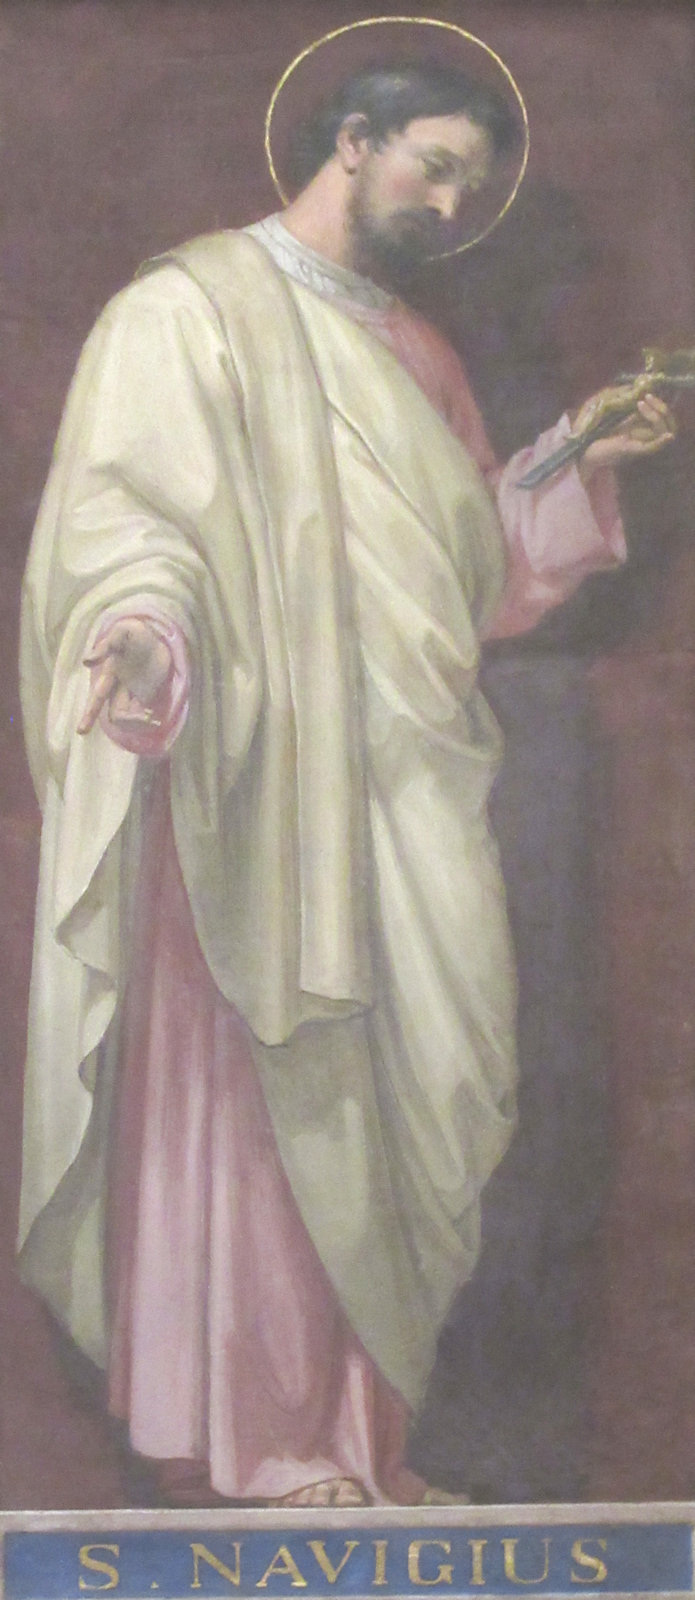 Navigius, Fresko, um 1850, in der Kirche Sant'Agostino in Rom